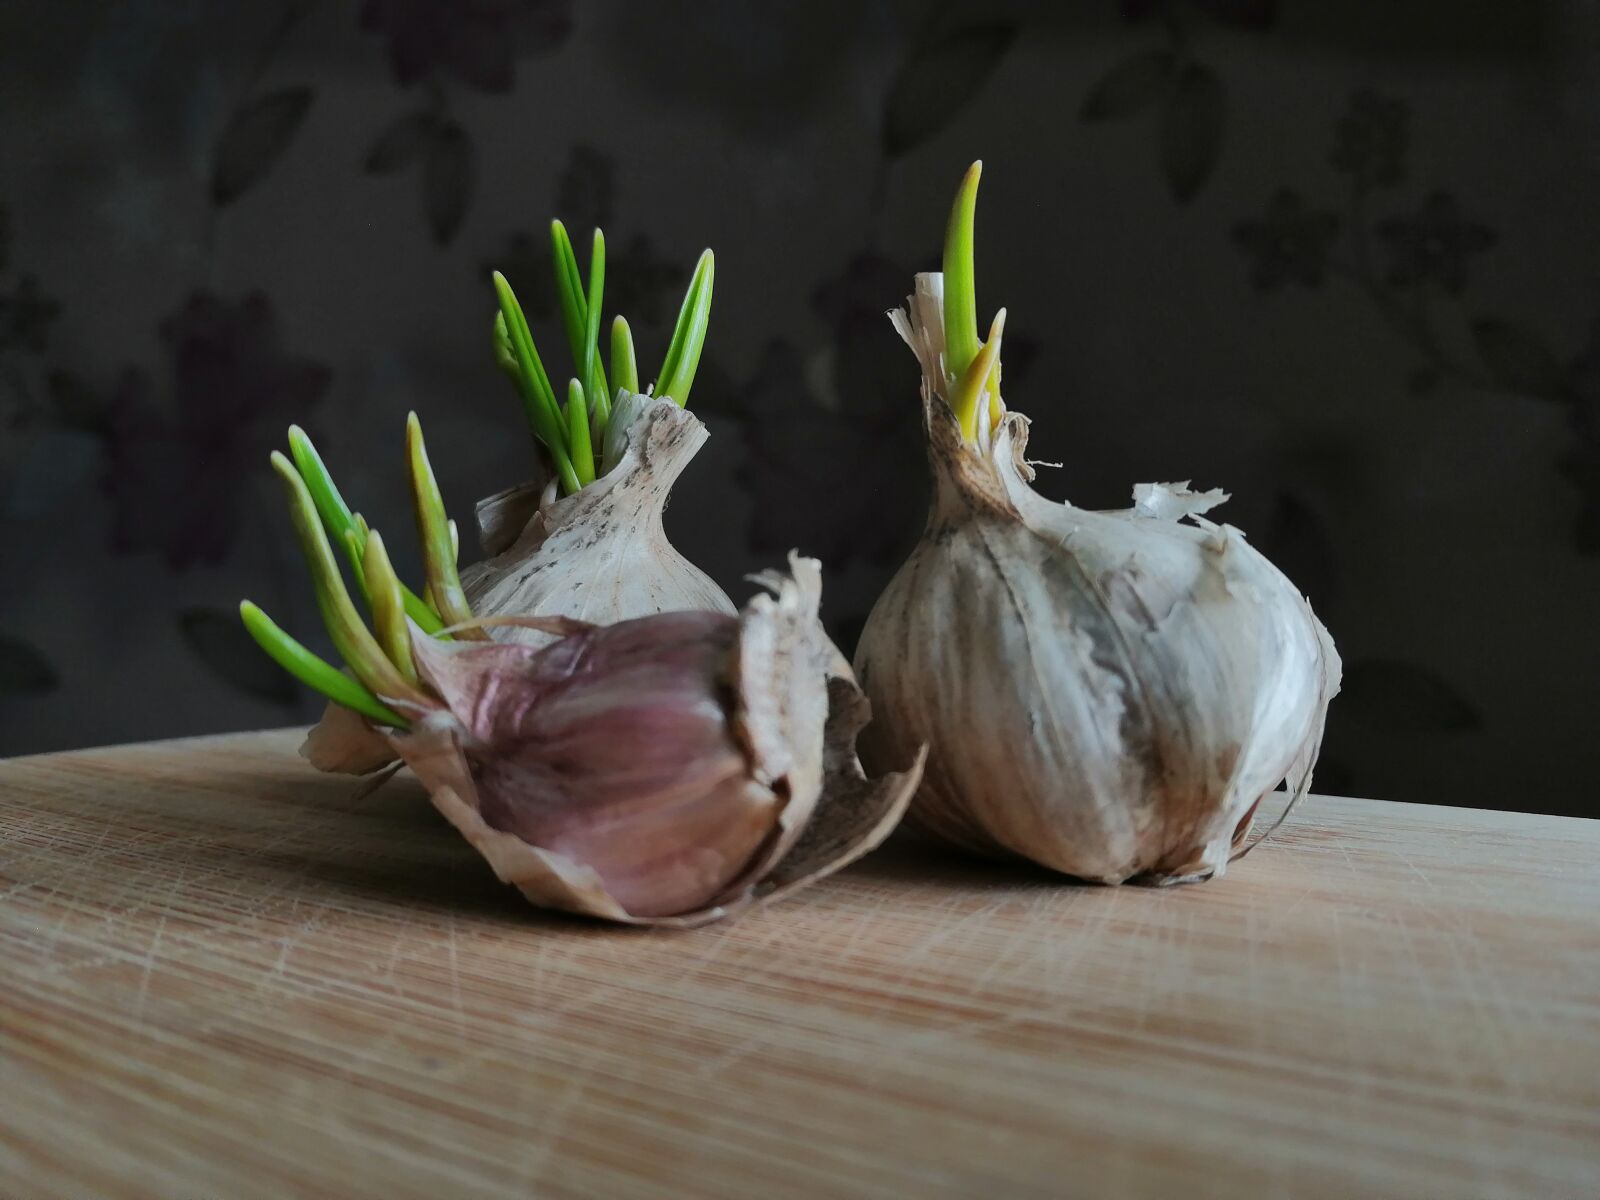 HUAWEI JSN-L21 sample photo. Garlic, eating, spring photography